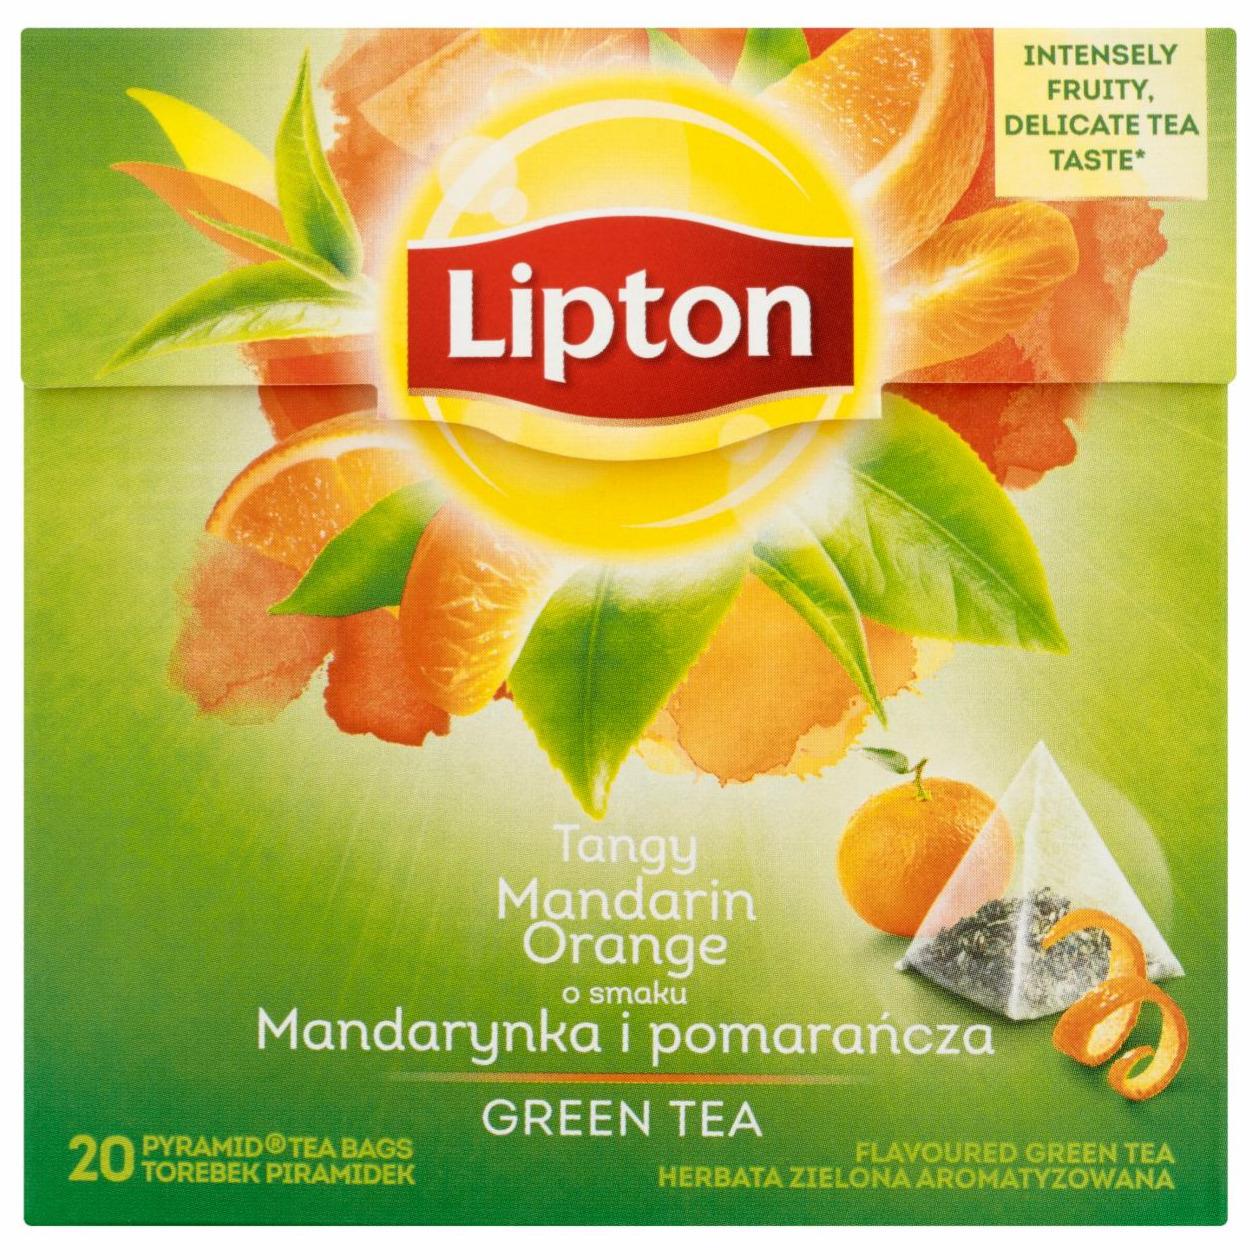 Zdjęcia - Herbata zielona aromatyzowana o smaku mandarynka i pomarańcza Lipton